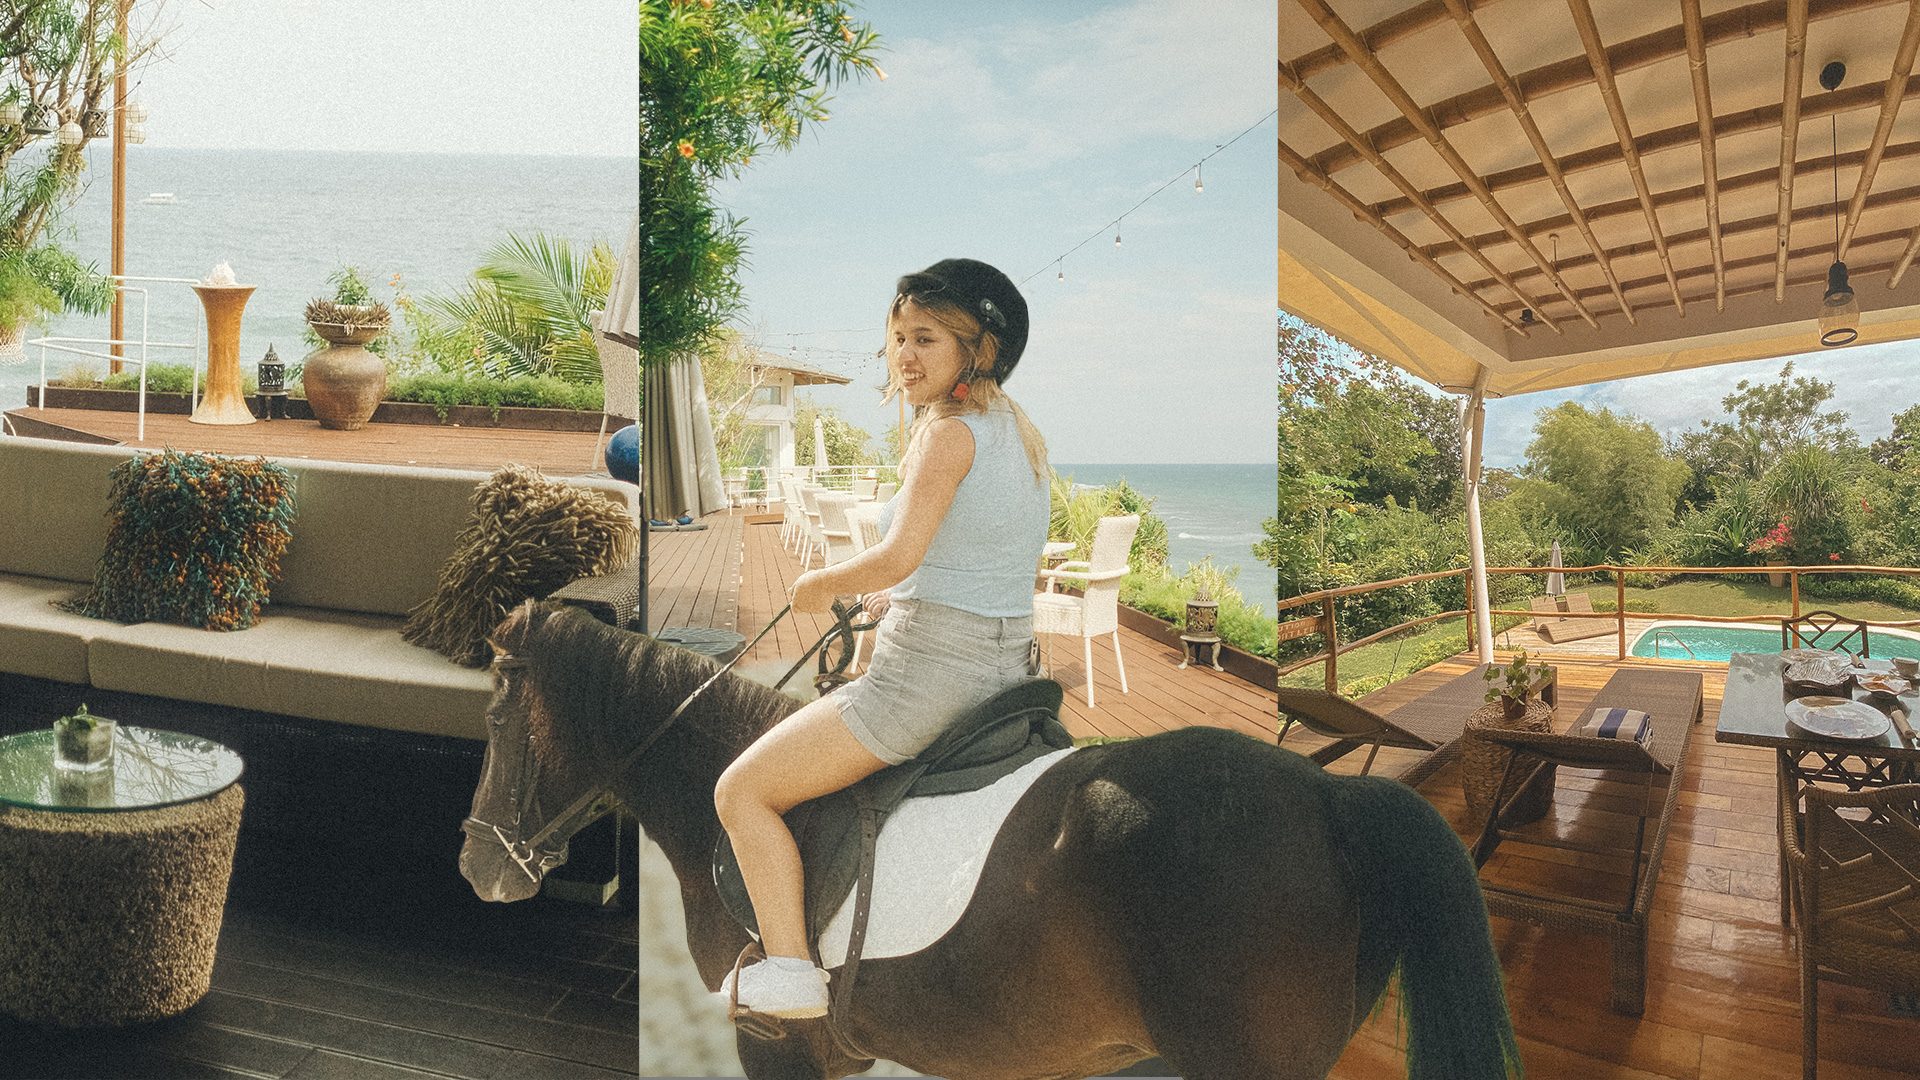 Ride horses, bask in nature at this Panglao, Bohol sanctuary resort